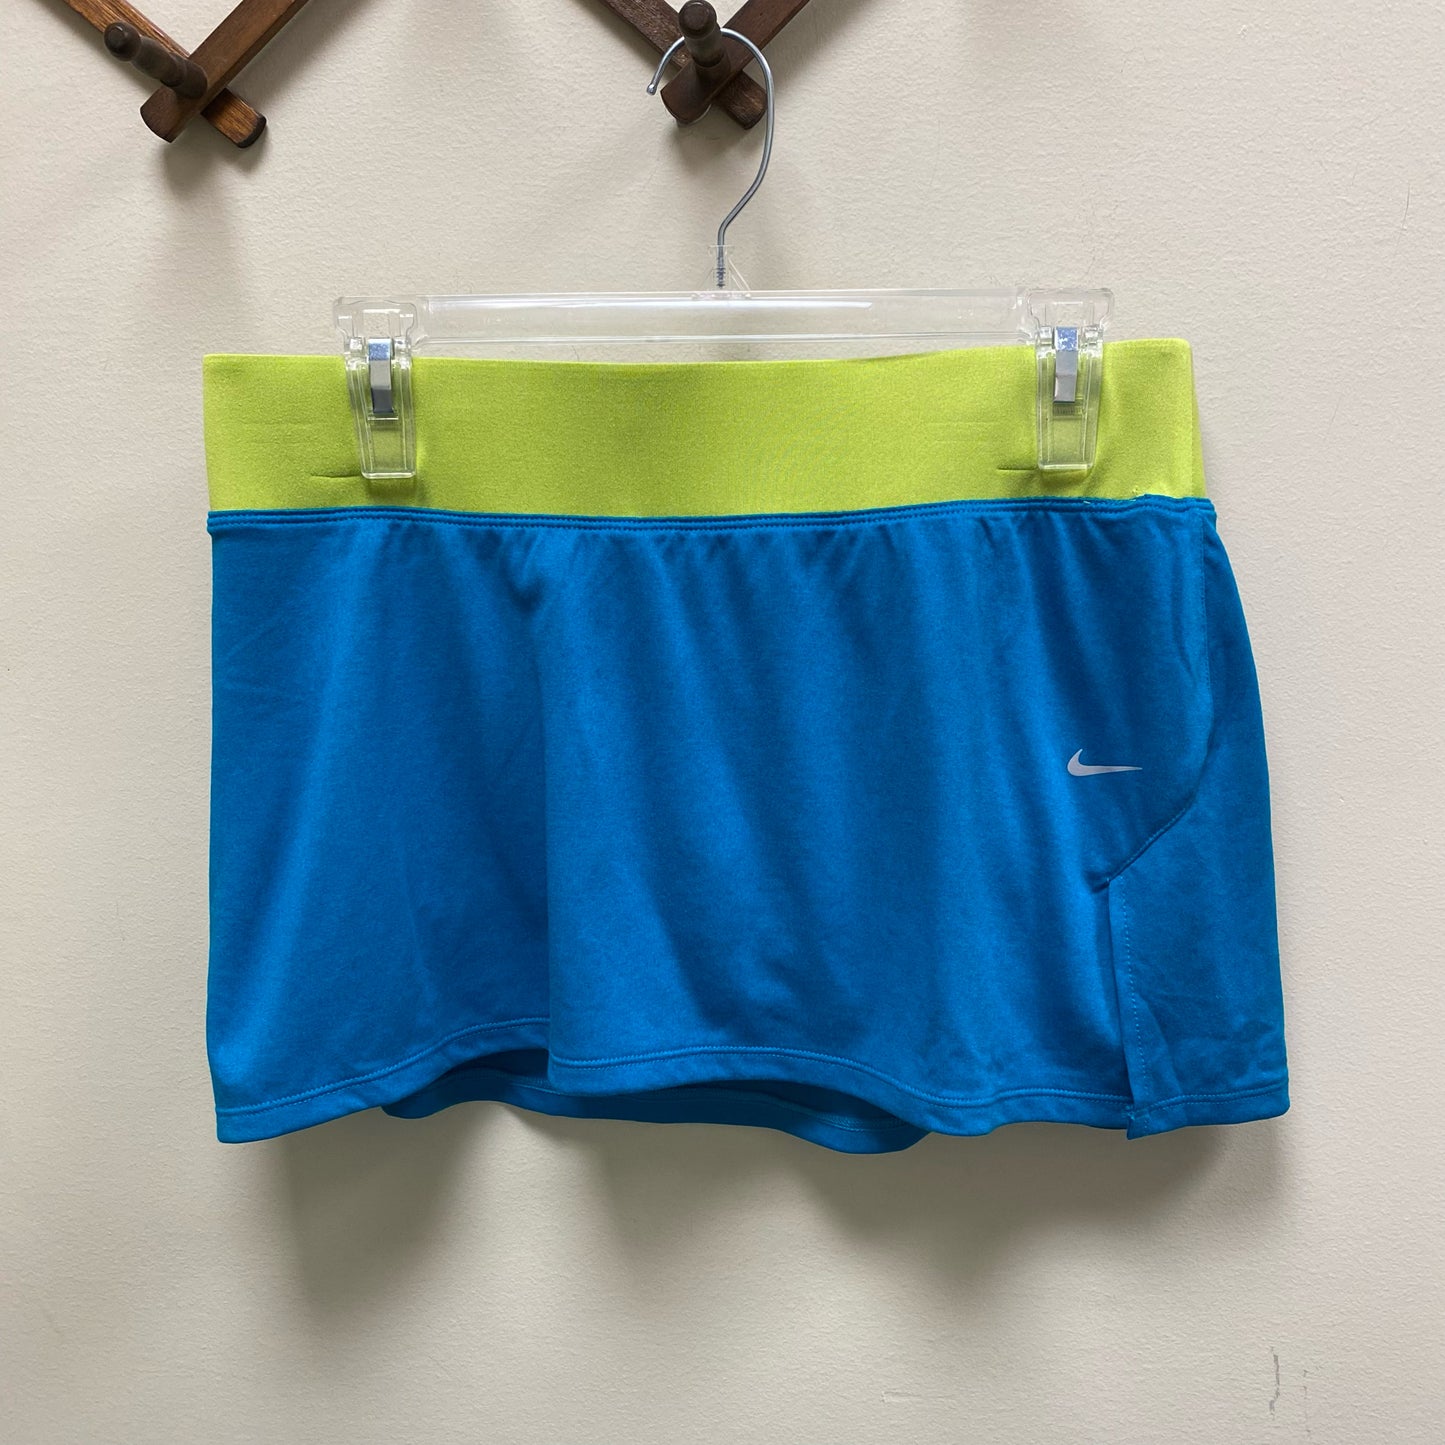 Nike Women's Dri-Fit Knit Running Skirt w/Compression Shorts Skort - Size Small